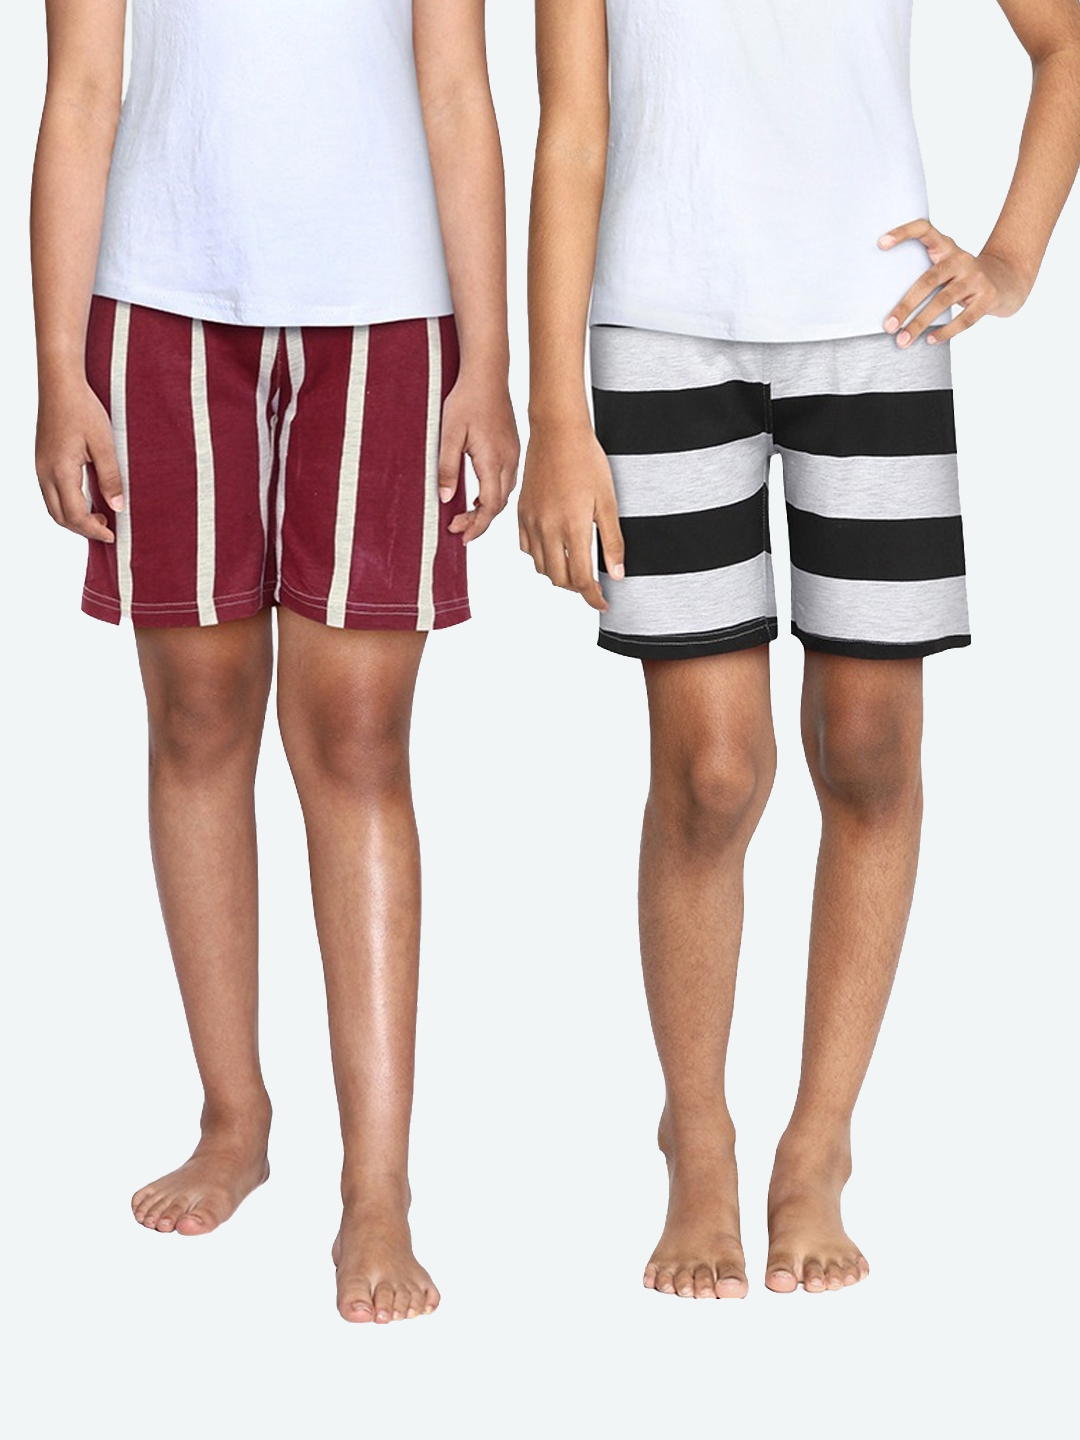 SEYBIL | Seybil teen girls cotton rich printed lounge shorts